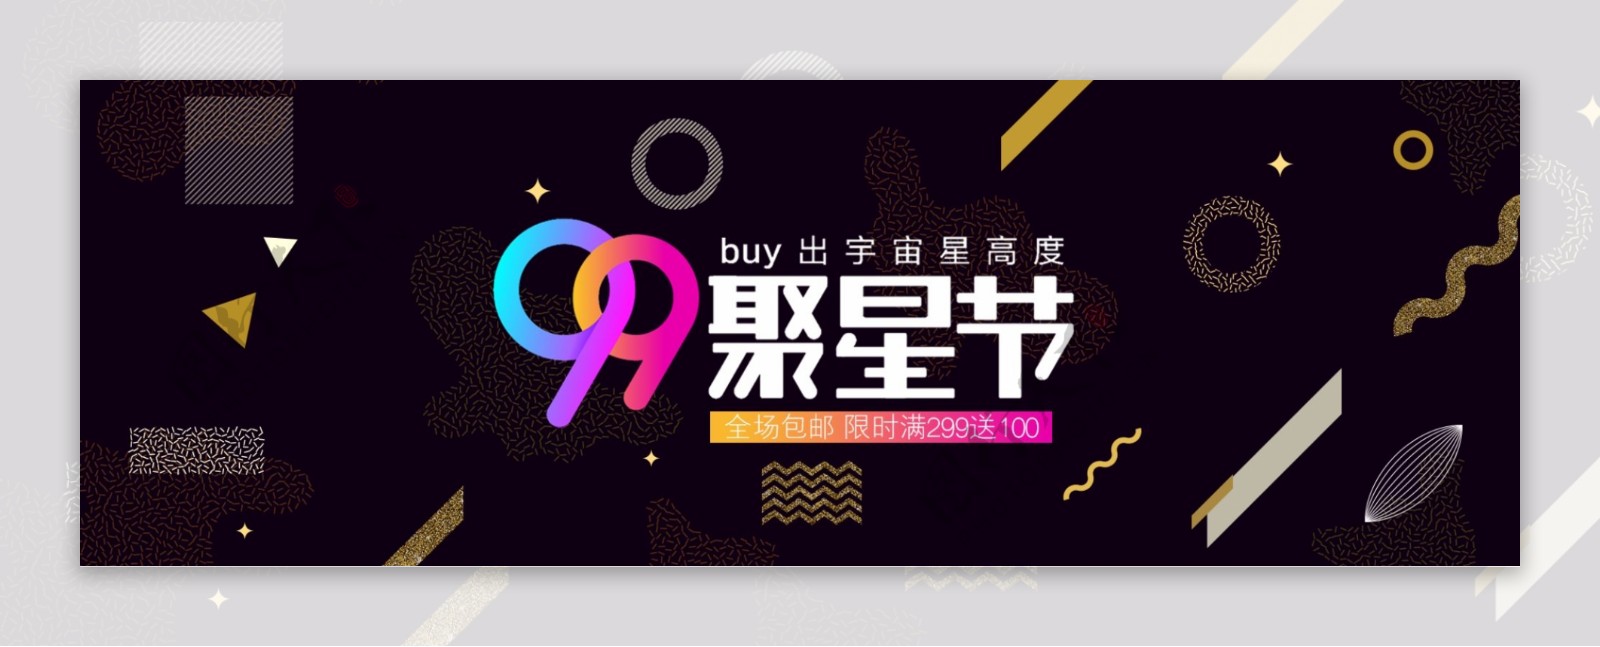 电商淘宝天猫京东炫酷99聚星节通用海报banner海报背景模板设计